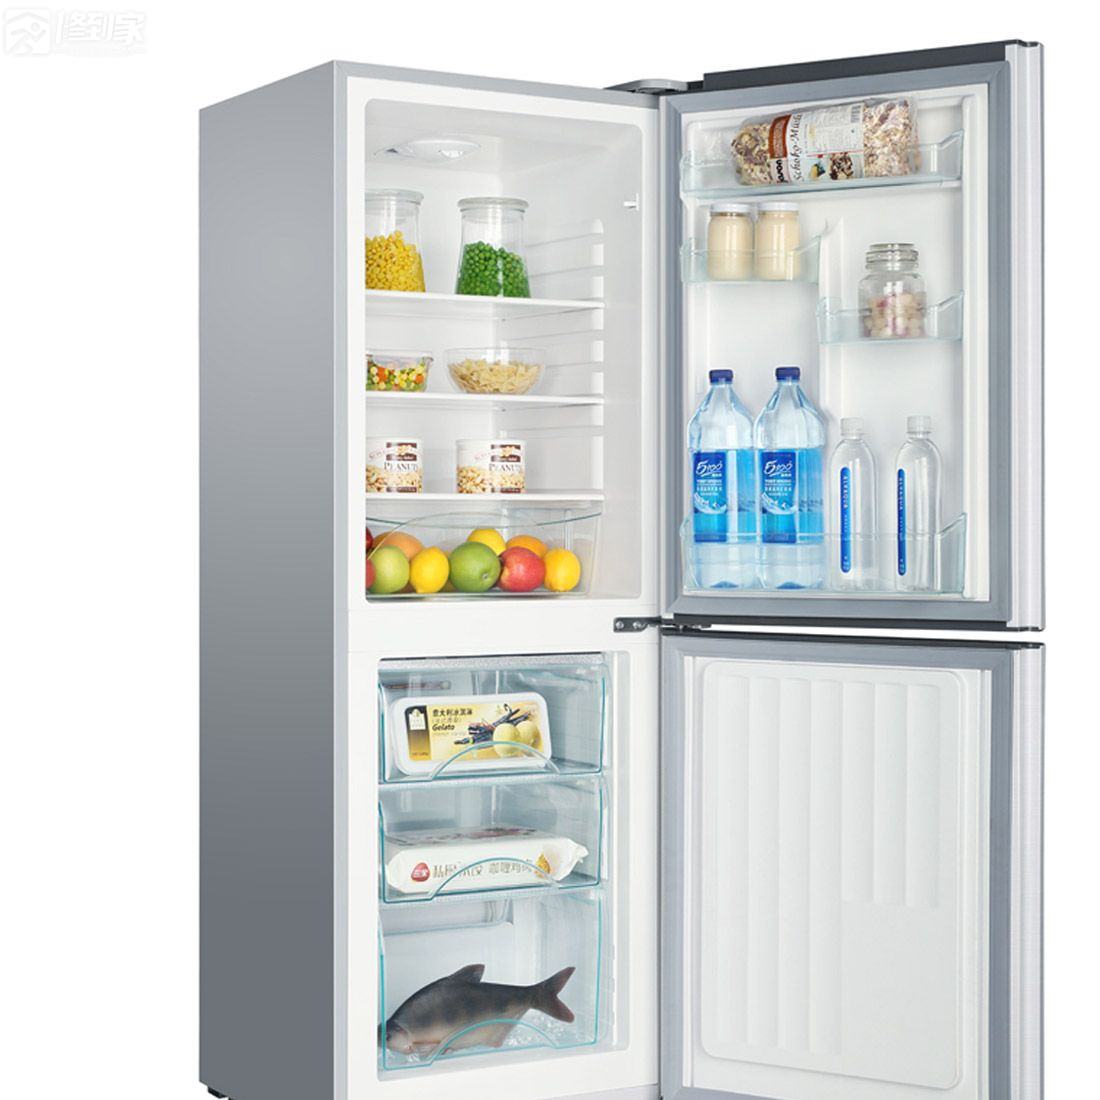 清洗冰箱有讲究的,定期对冰箱进行清洗(每年至少2次)